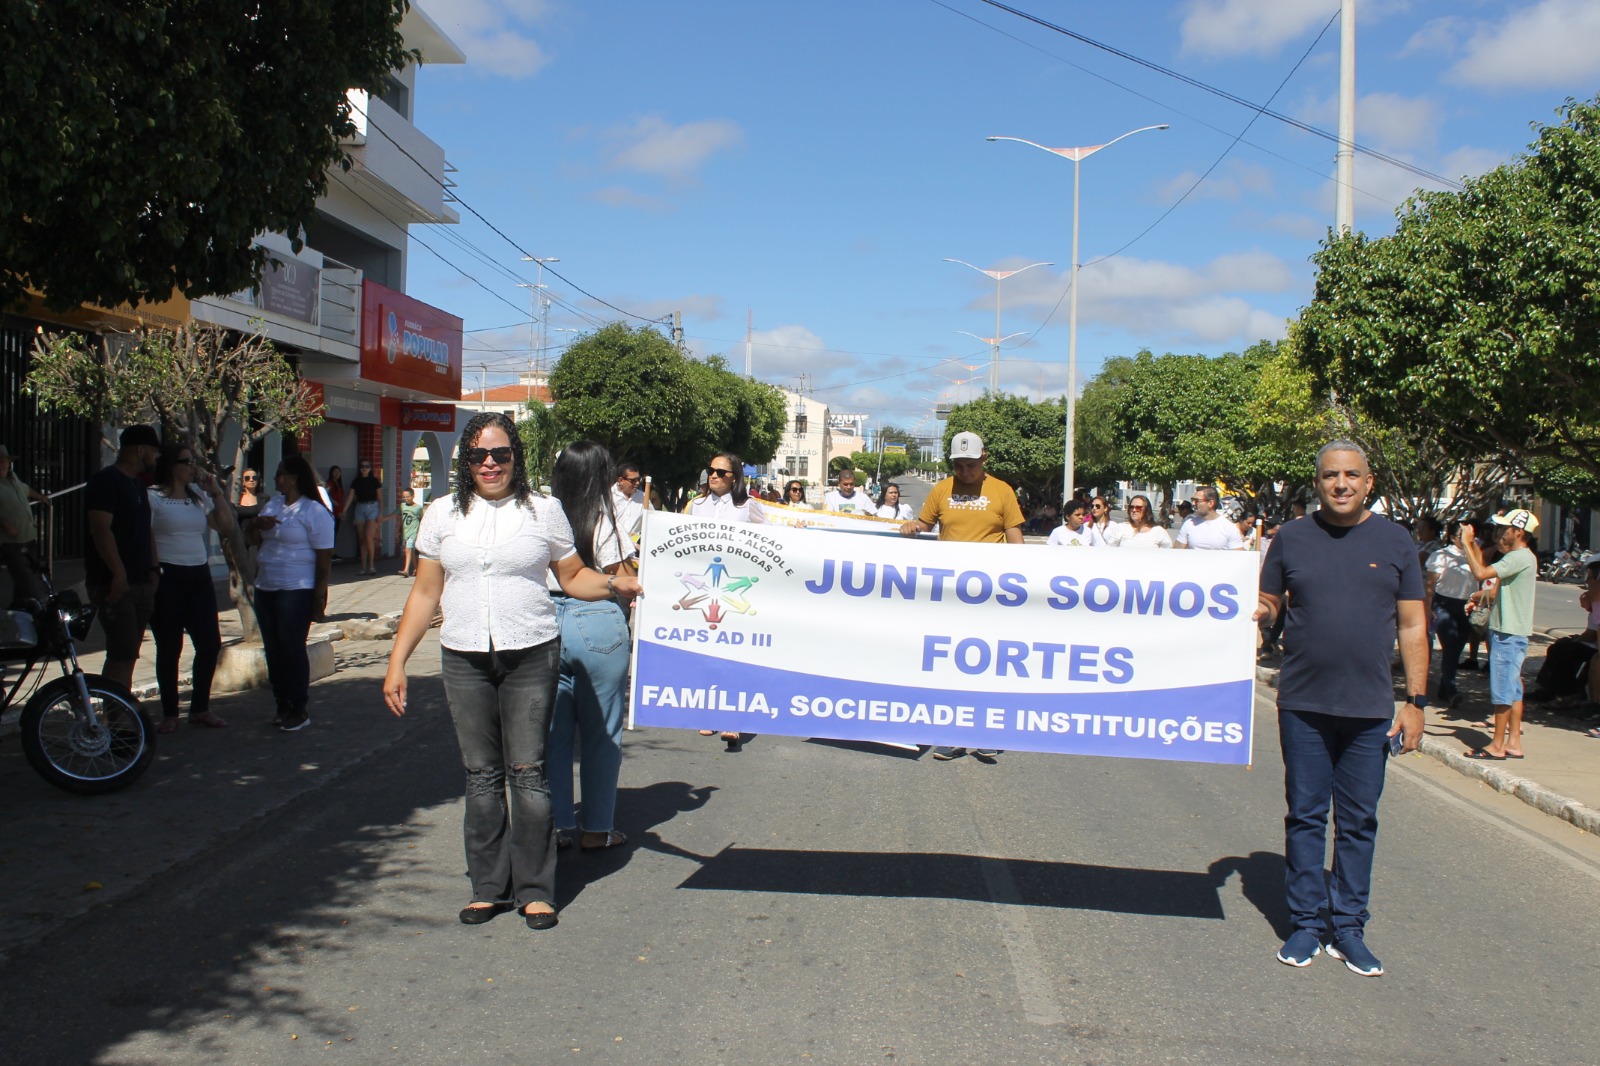 Desfiles-Civicos-em-Monteiro-acontecem-com-grande-presenca-de-publico-e-autoridades-38 Desfiles Cívicos em Monteiro acontecem com grande presença de público e autoridades